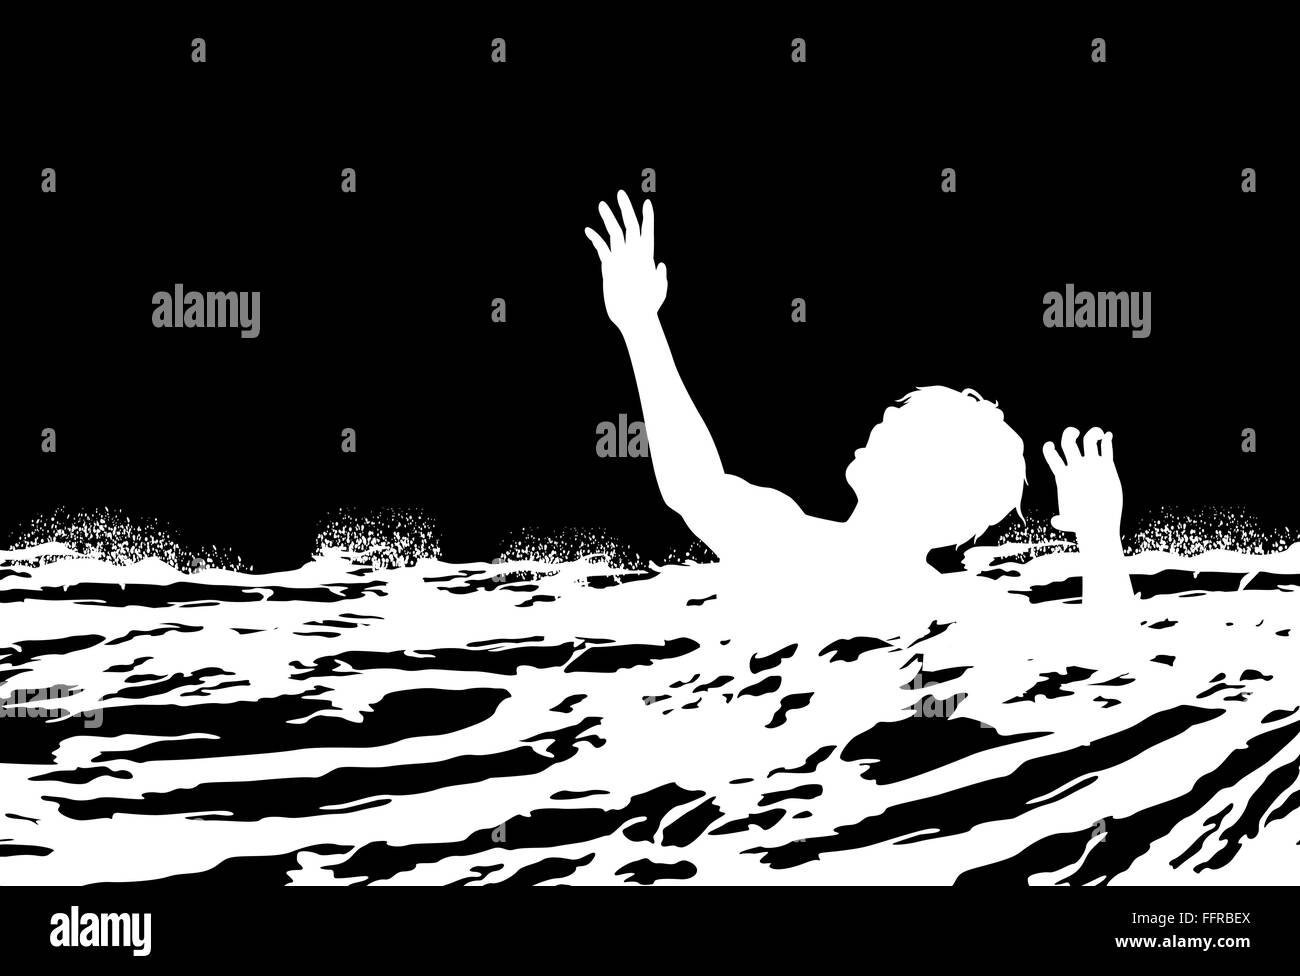 Spe8 illustration vectorielle modifiable d'un homme de se noyer dans des eaux agitées Illustration de Vecteur